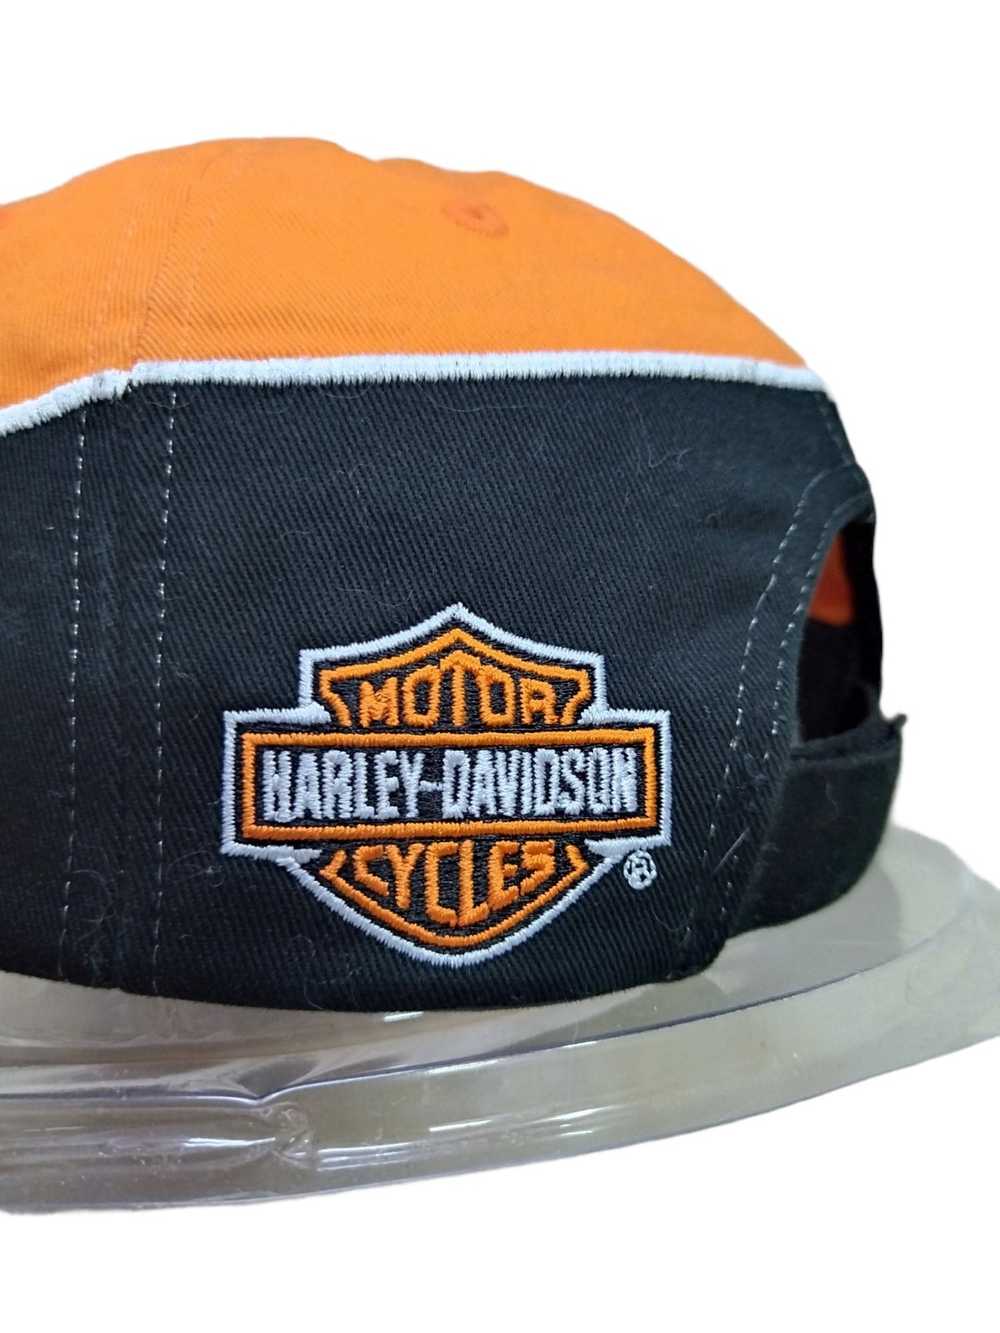 Harley Davidson Vintage Harley Davidson Cap - image 5